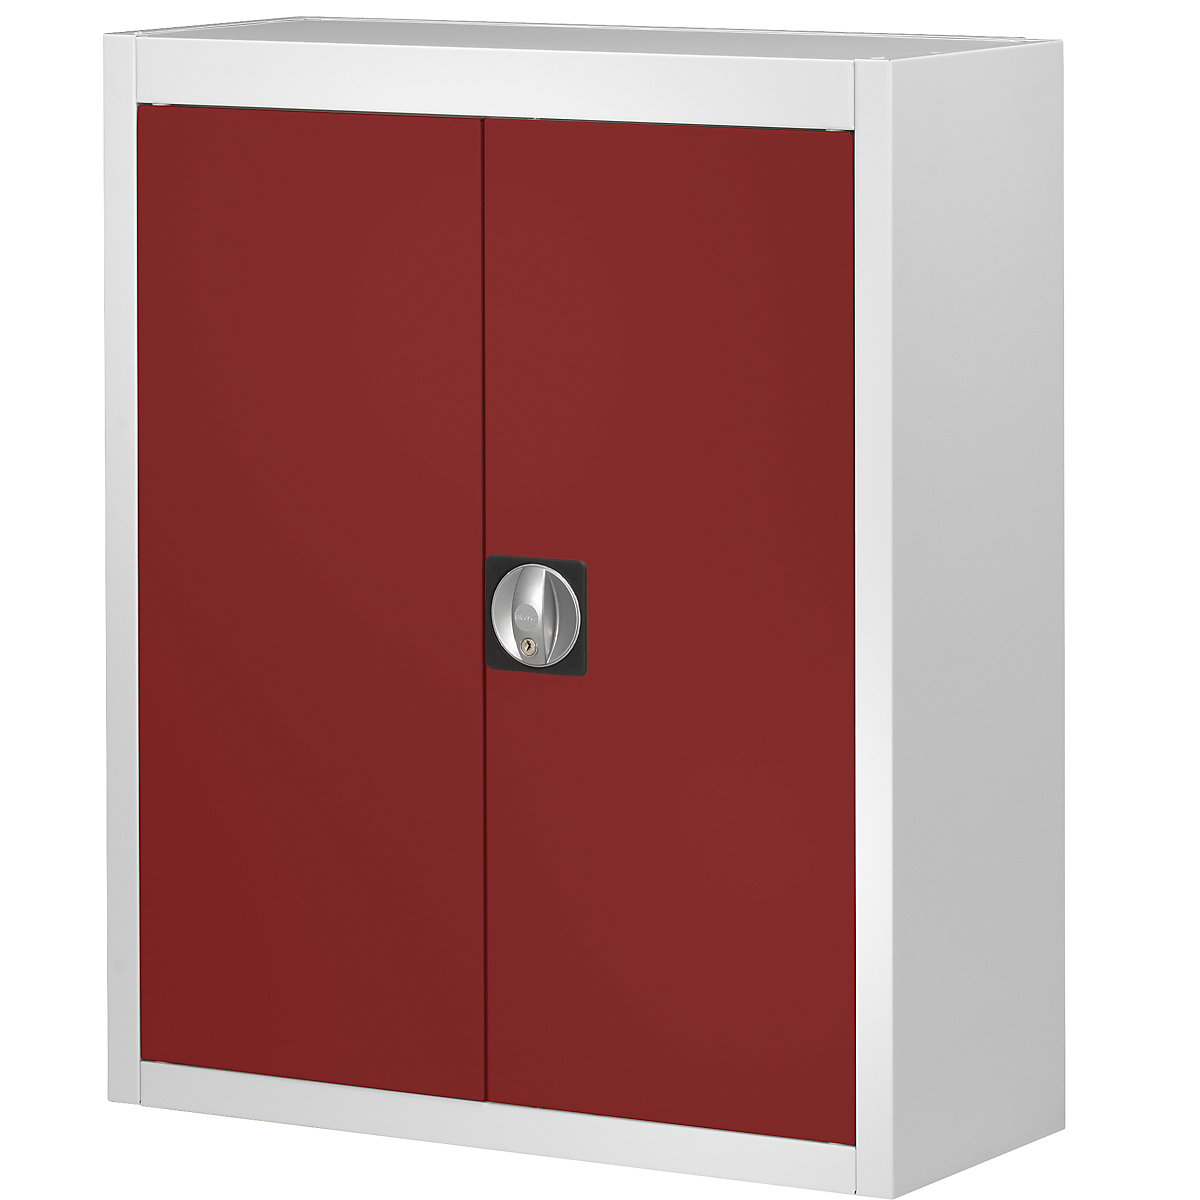 Skladová skříň, bez přepravek s viditelným obsahem – mauser, v x š x h 820 x 680 x 280 mm, dvoubarevná, korpus šedý, dveře červené-5